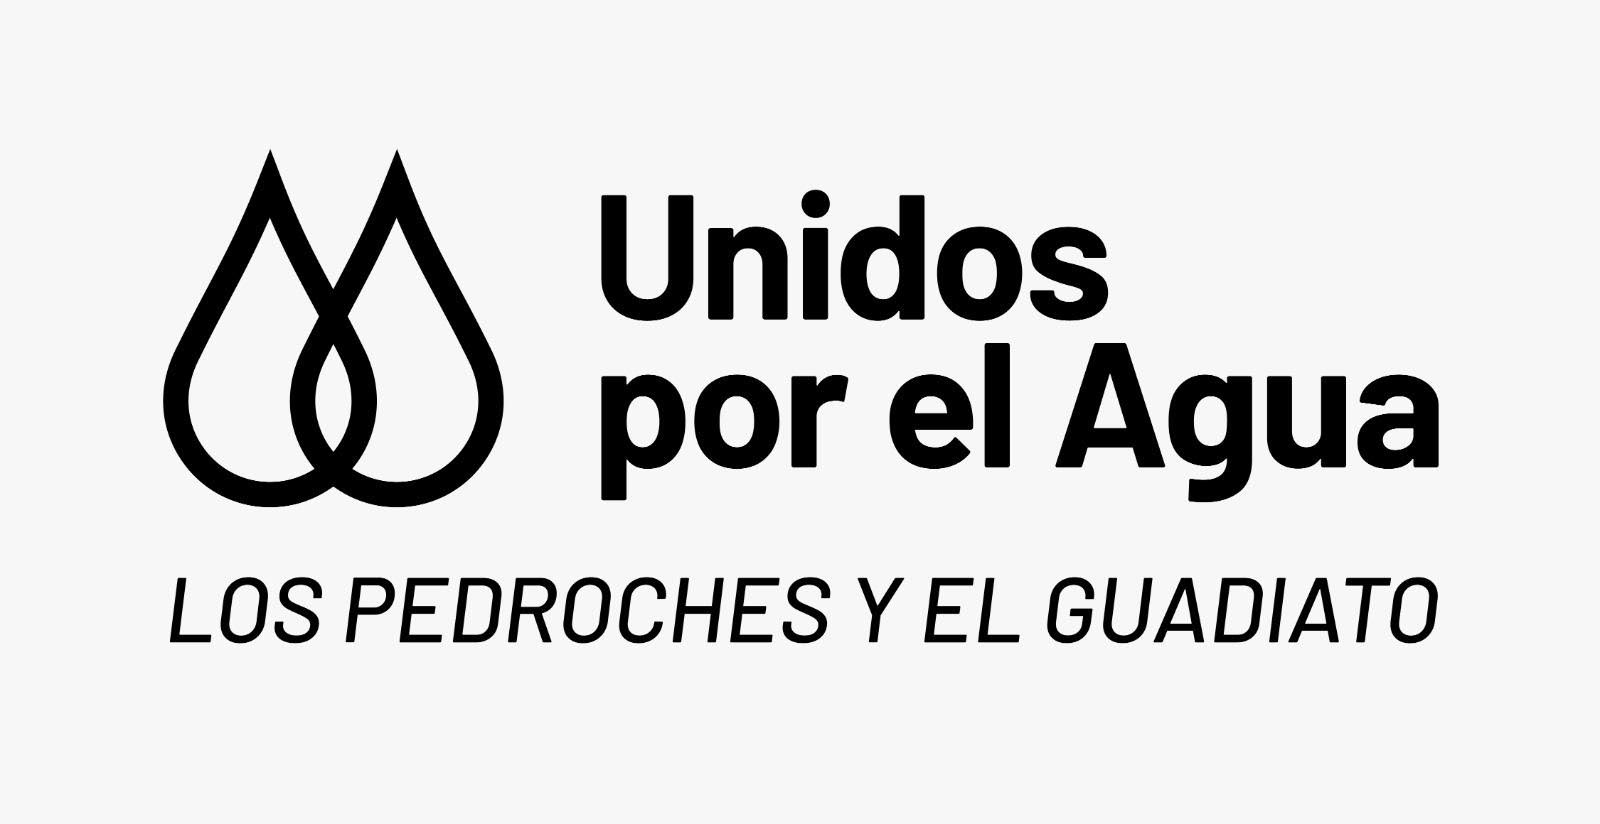 Plataforma Unidos por el Agua en El Guadiato y Los Pedroches